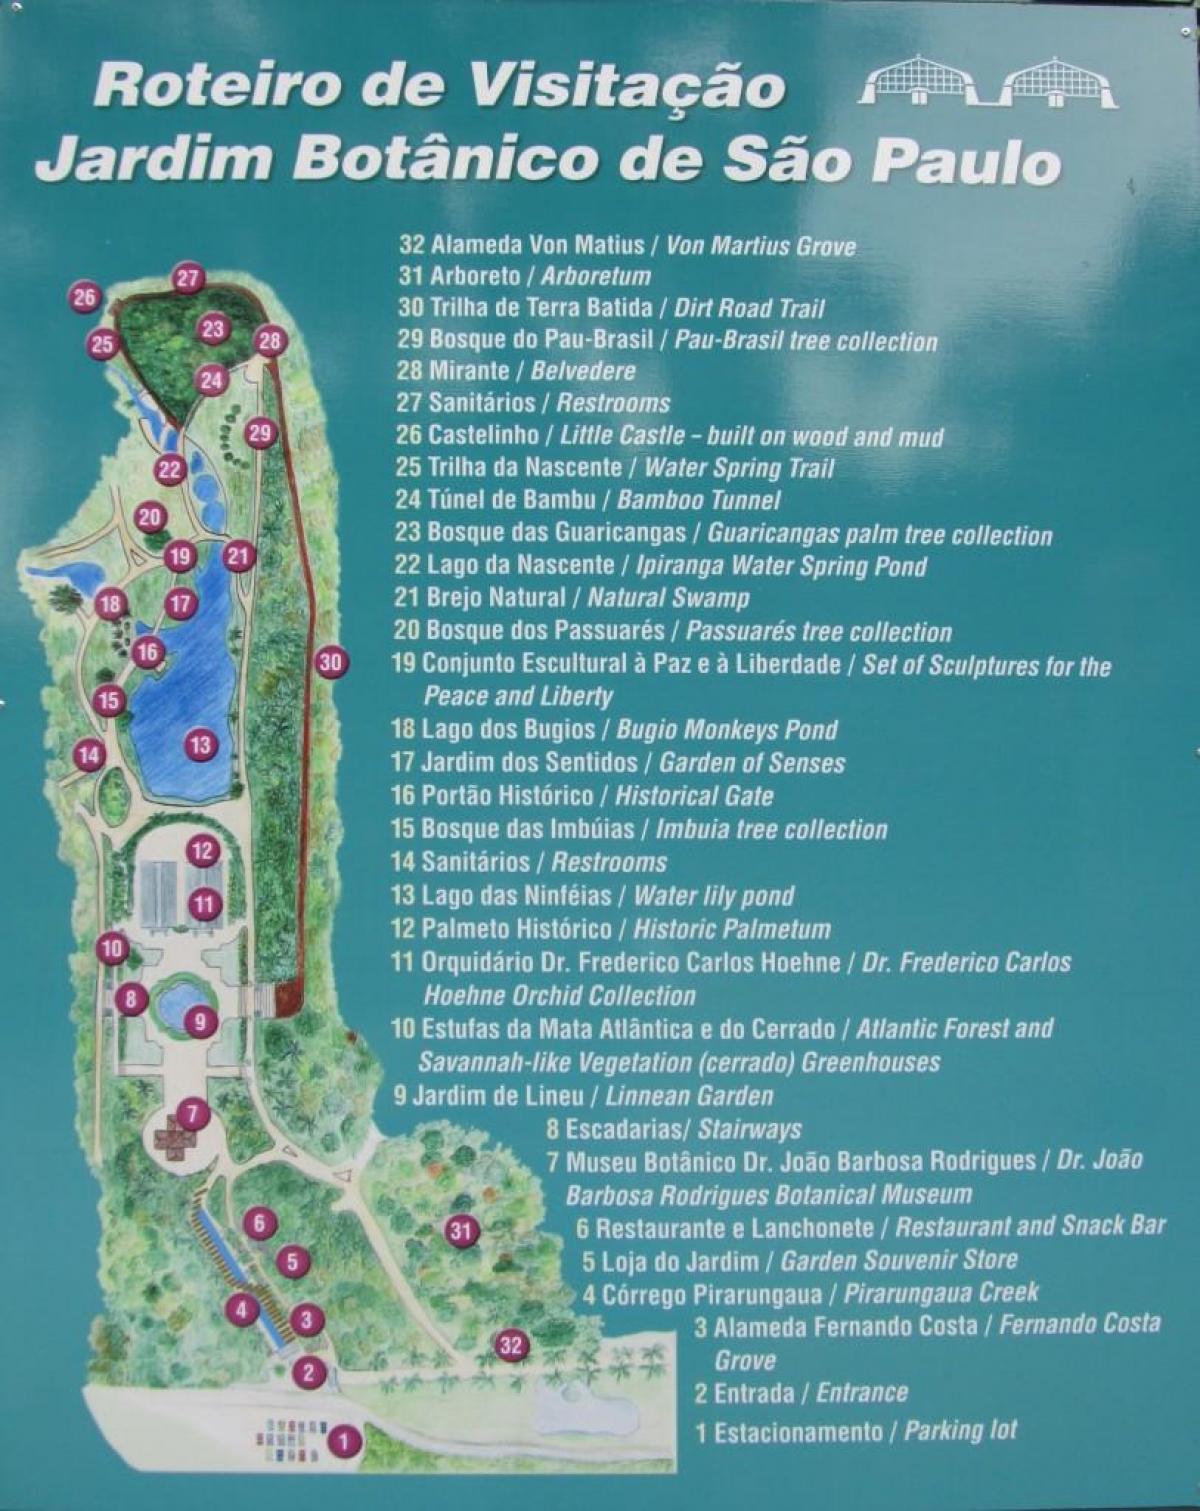 แผนที่ของ botanical สวน São Paulo